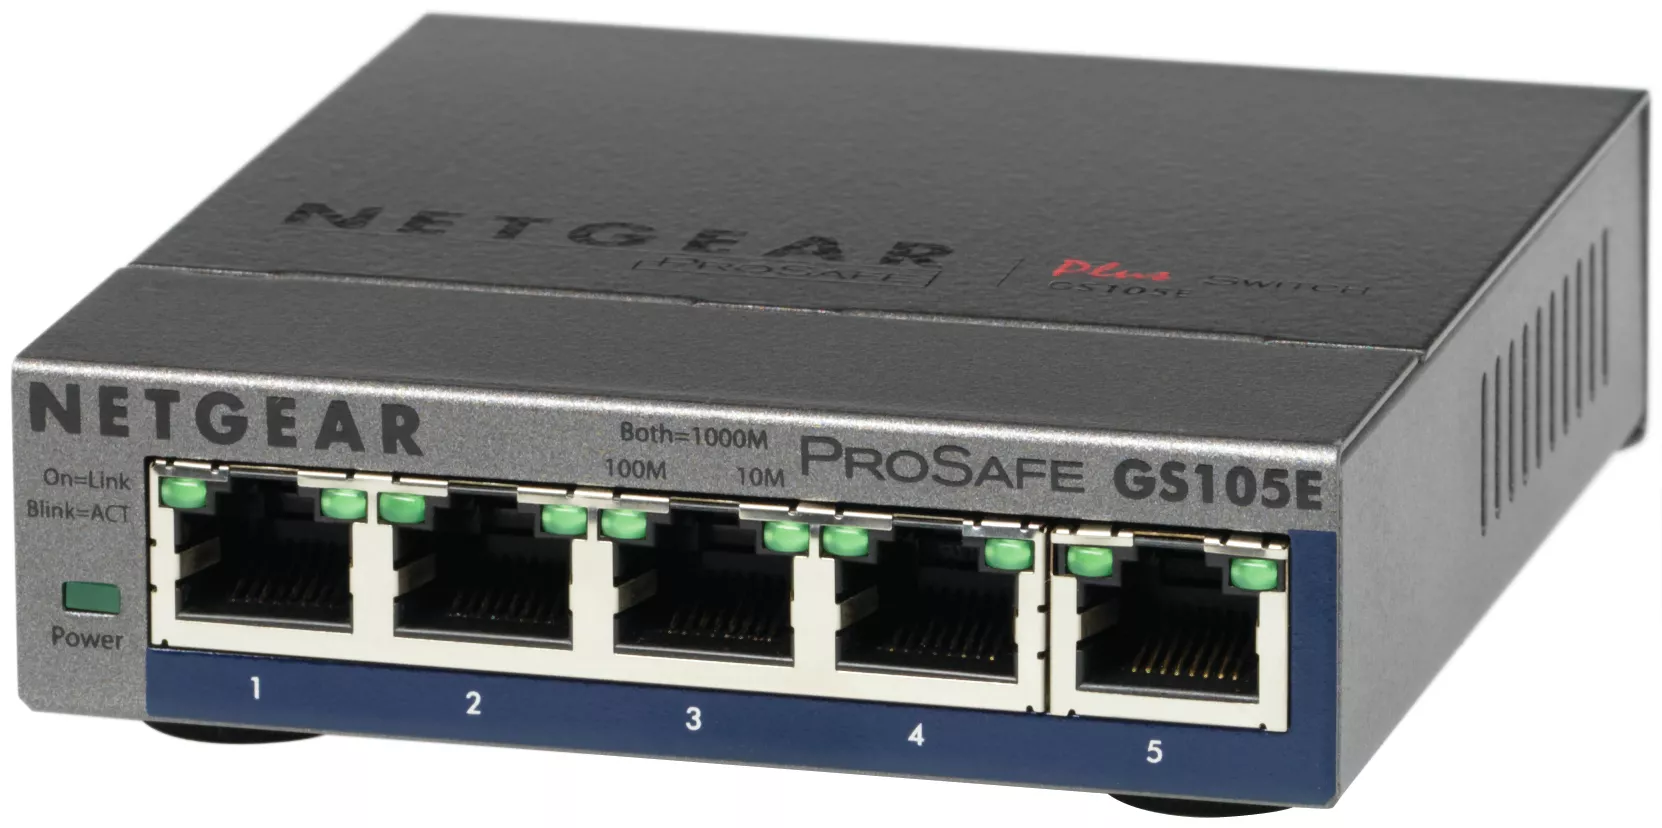 Vente NETGEAR Switch configurable ProSAFE Plus GS105Ev2 - 5 NETGEAR au meilleur prix - visuel 2